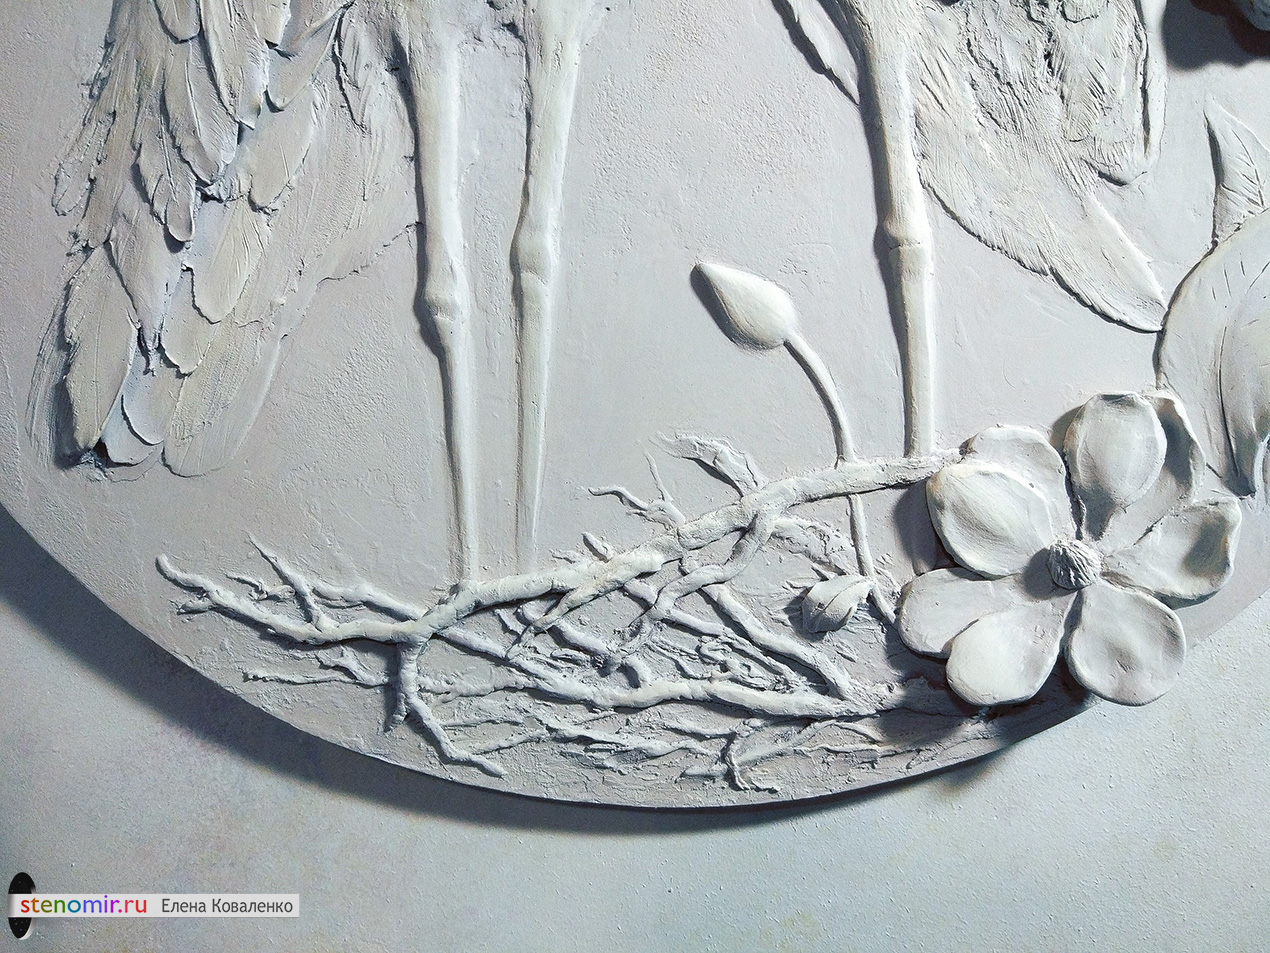 гнездо аистов с цветами - фрагмент панно на заказ